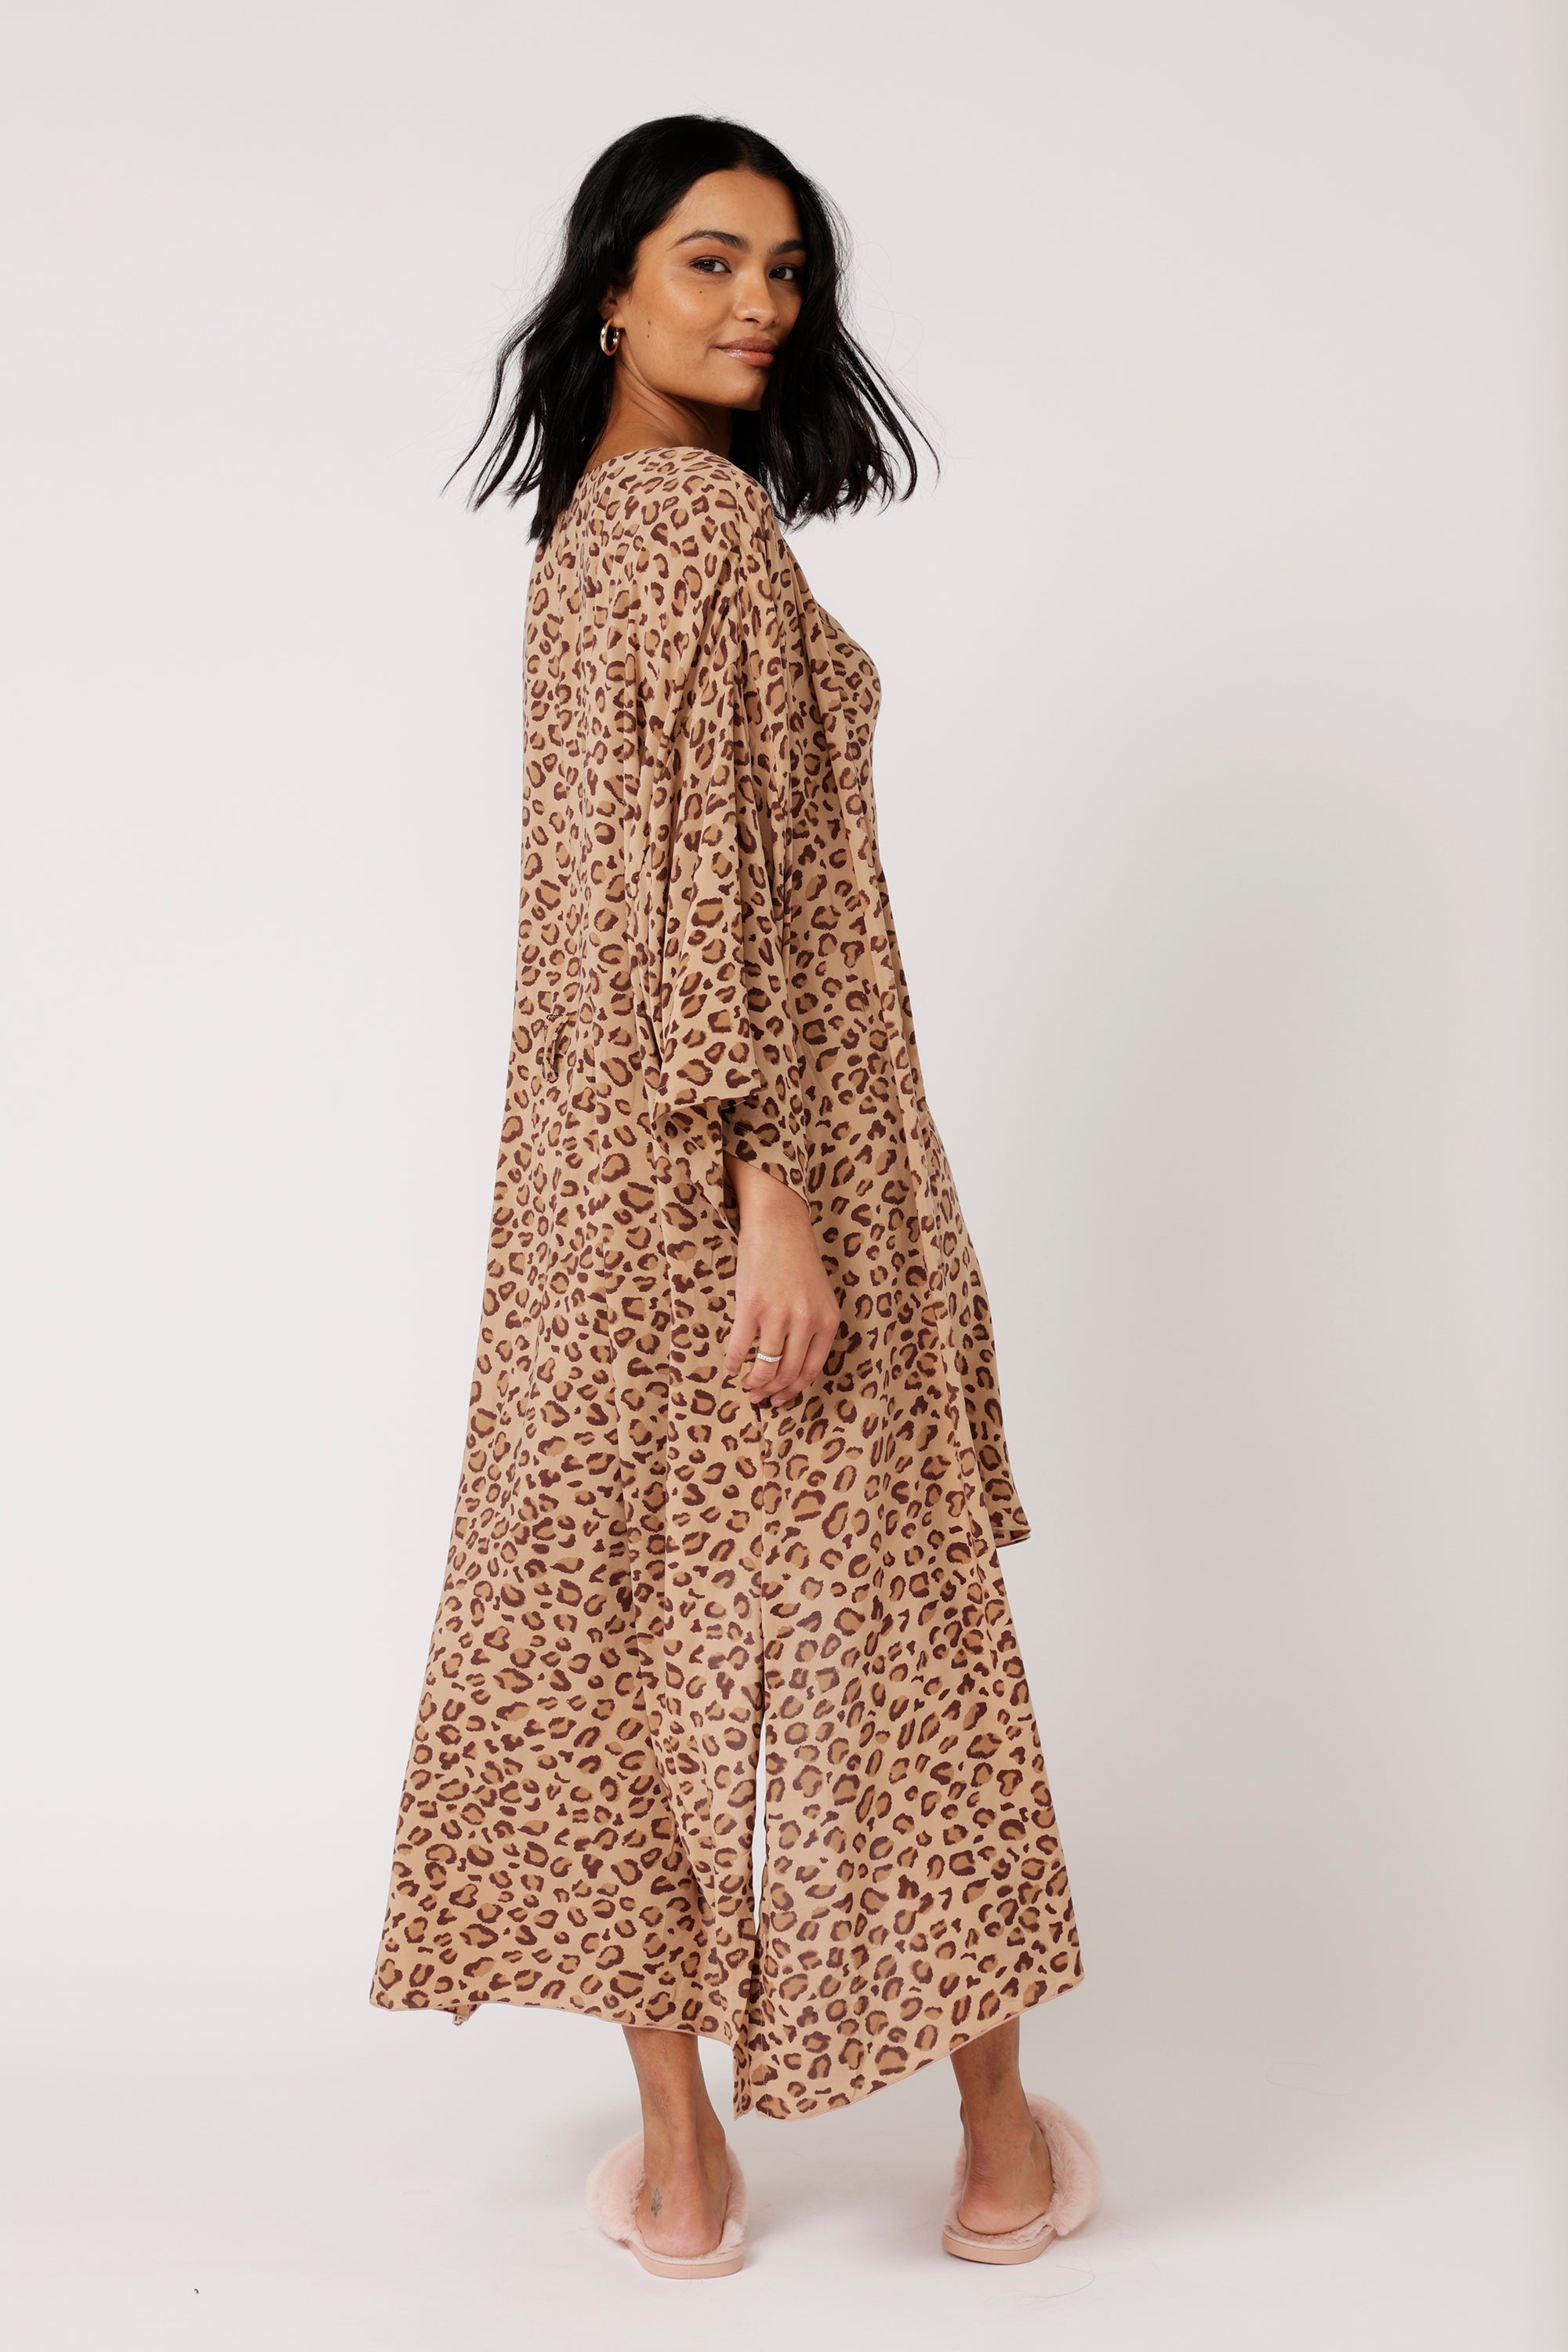 Kimono LONG | Leopard - Saffron Road